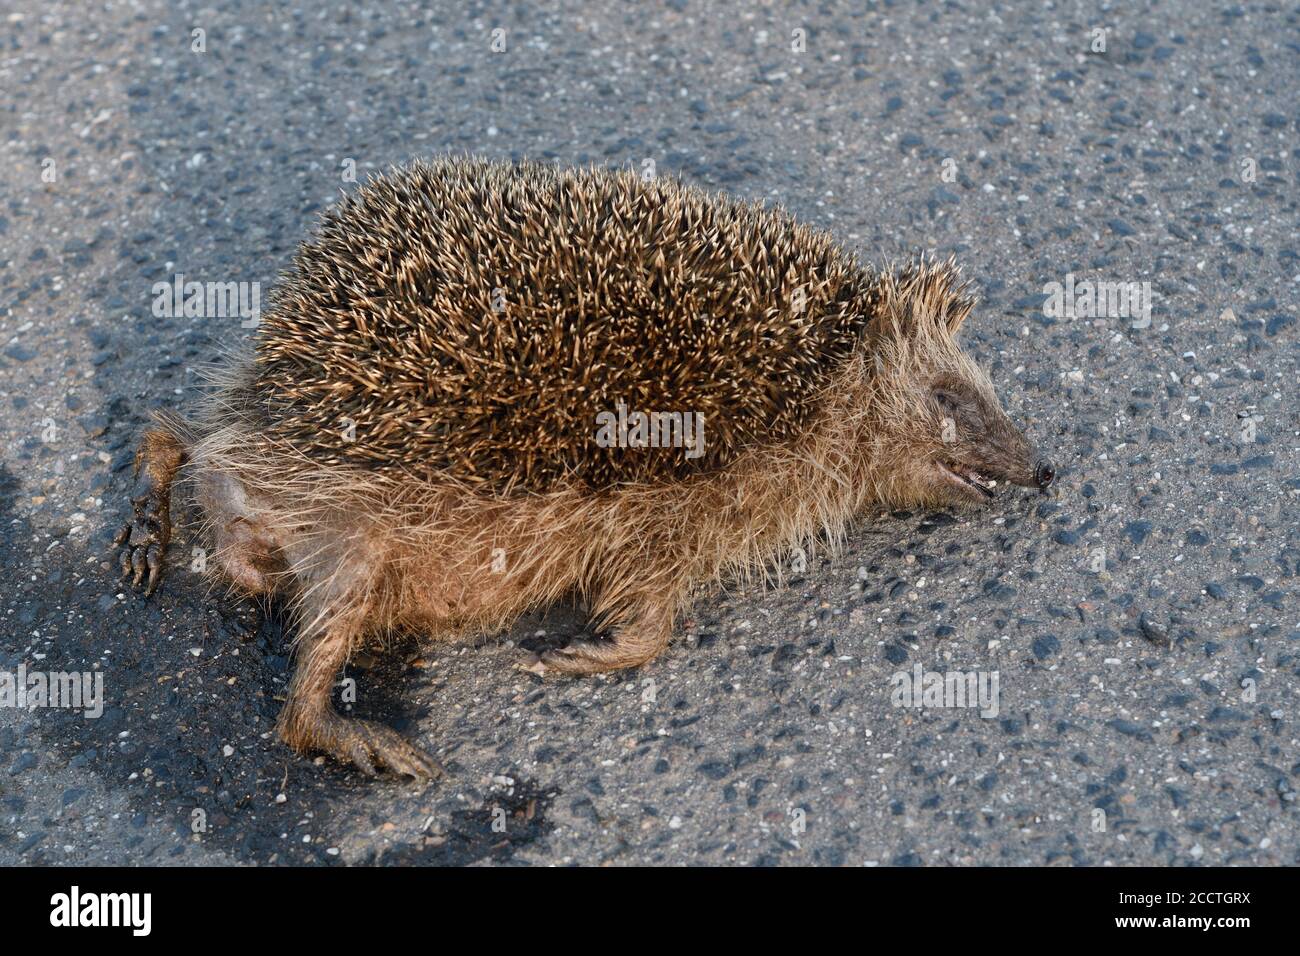 Igel ( Erinaceus europaeus ), tot, auf der Straße zerquetscht, Roadkill, gefährdet, vom Straßenverkehr überfahren, Wildtiere, Europa. Stockfoto